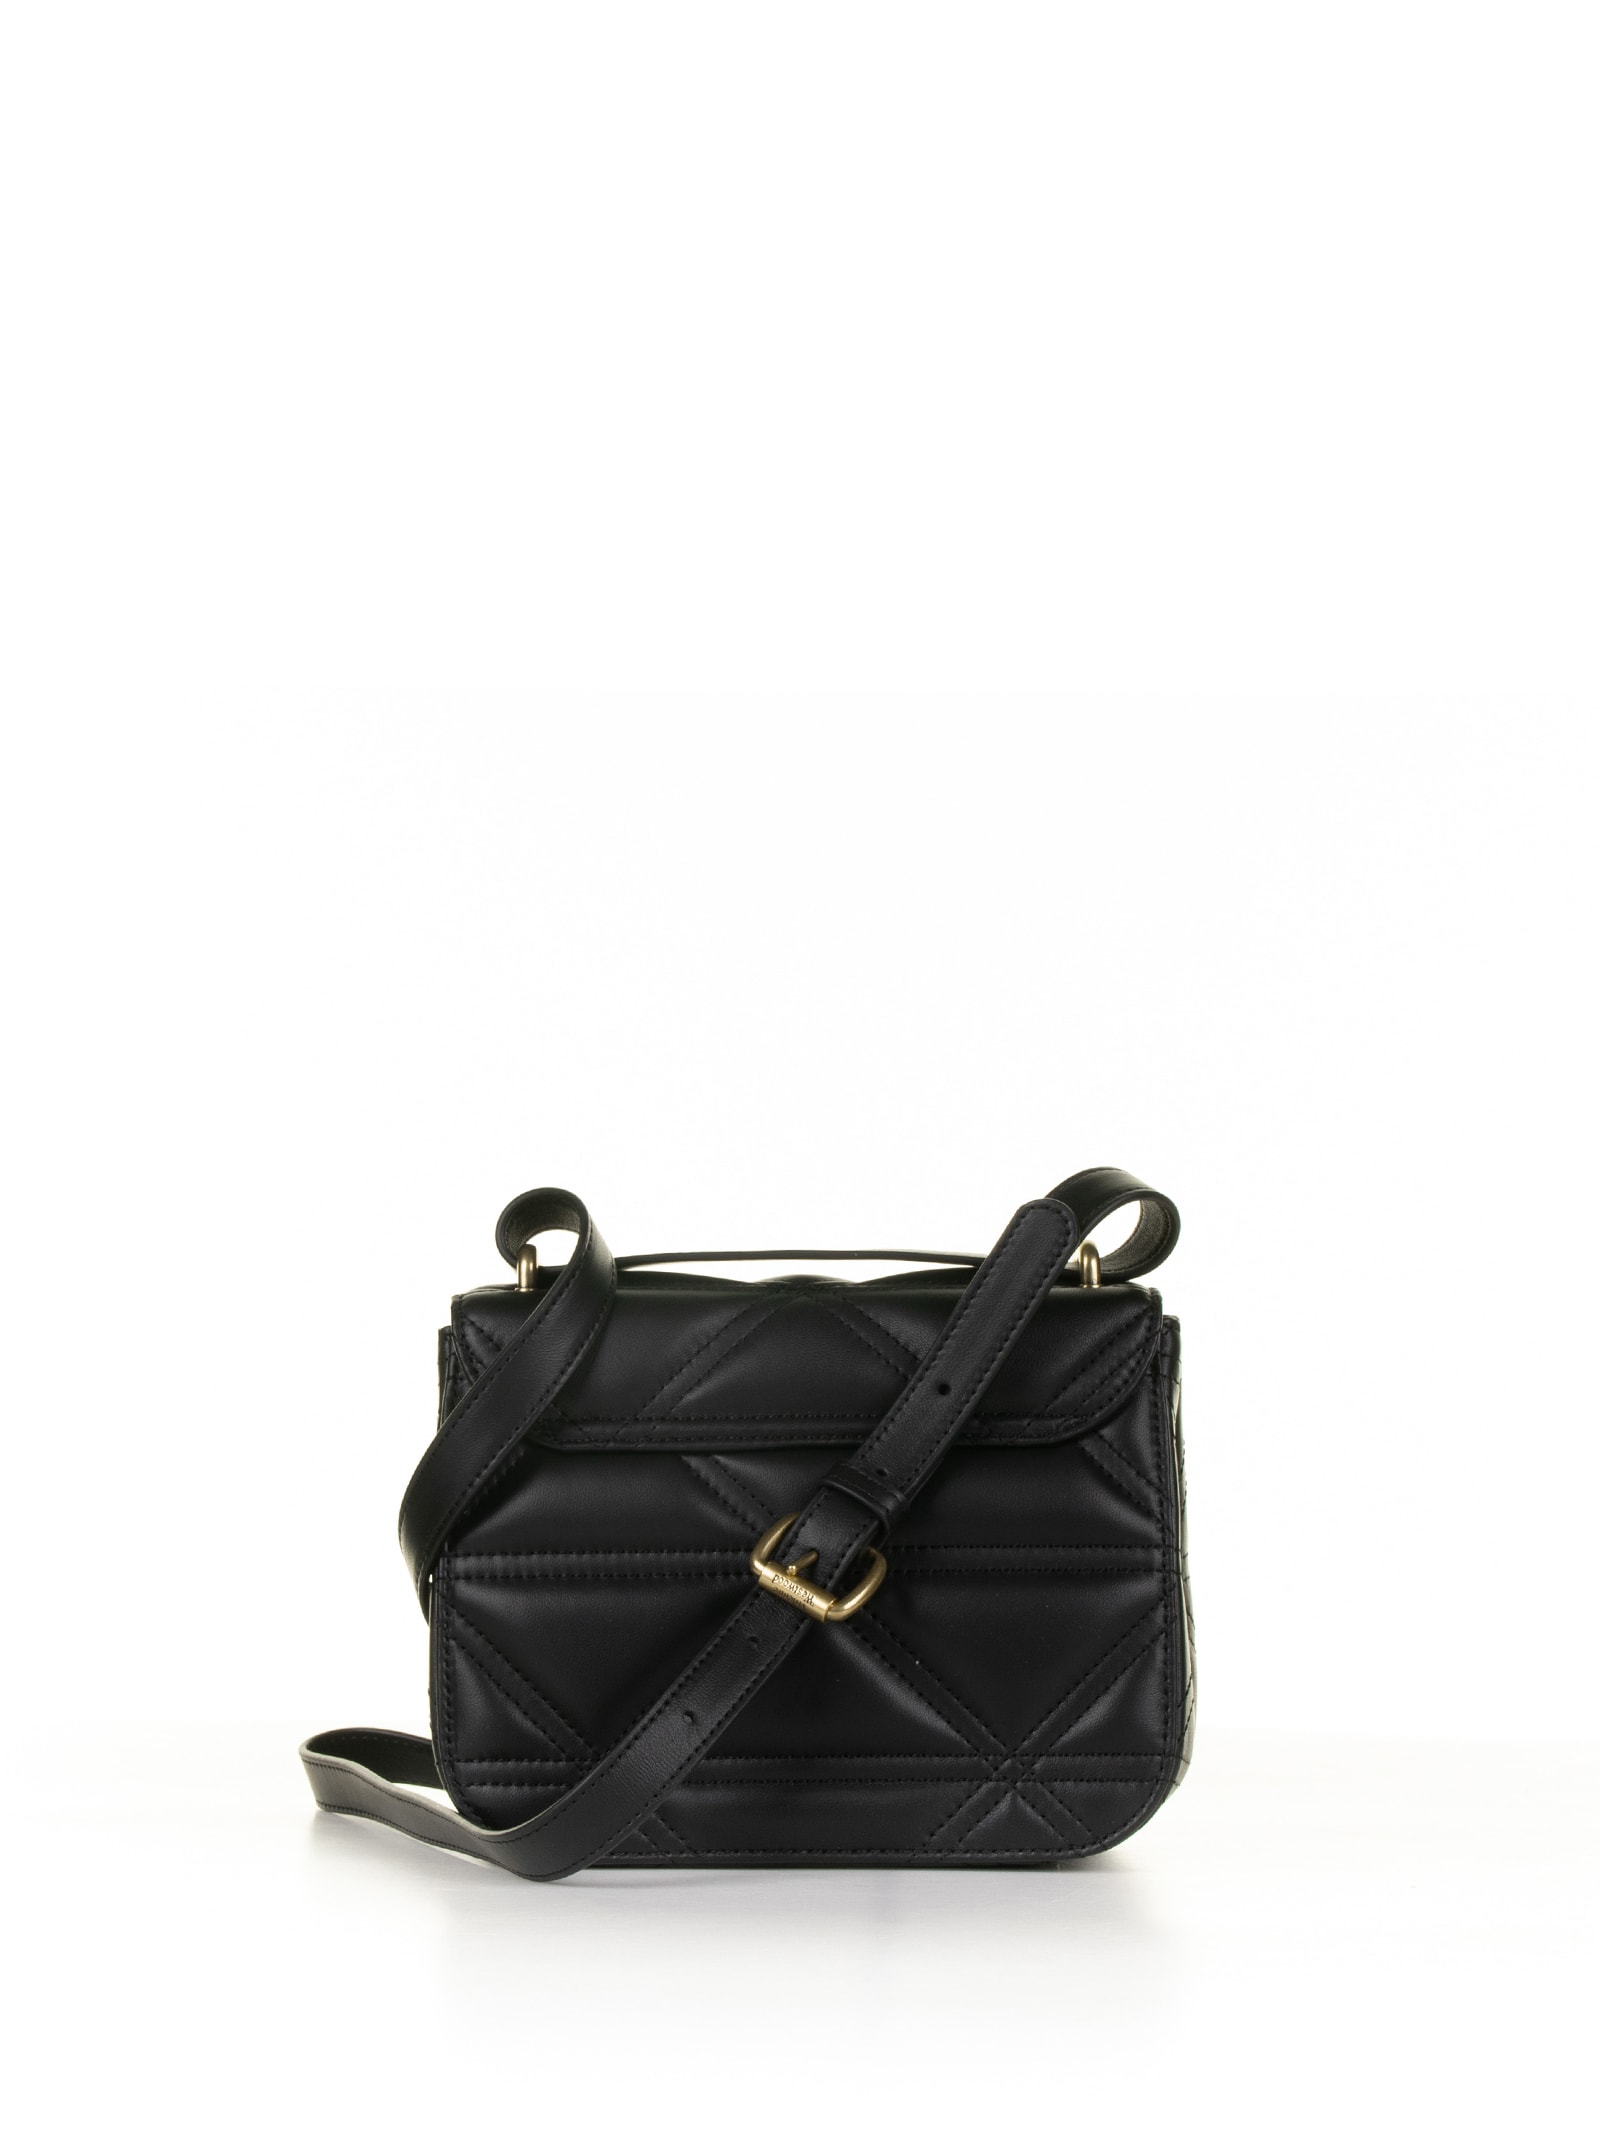 Shop Vivienne Westwood Black Leather Shoulder Bag